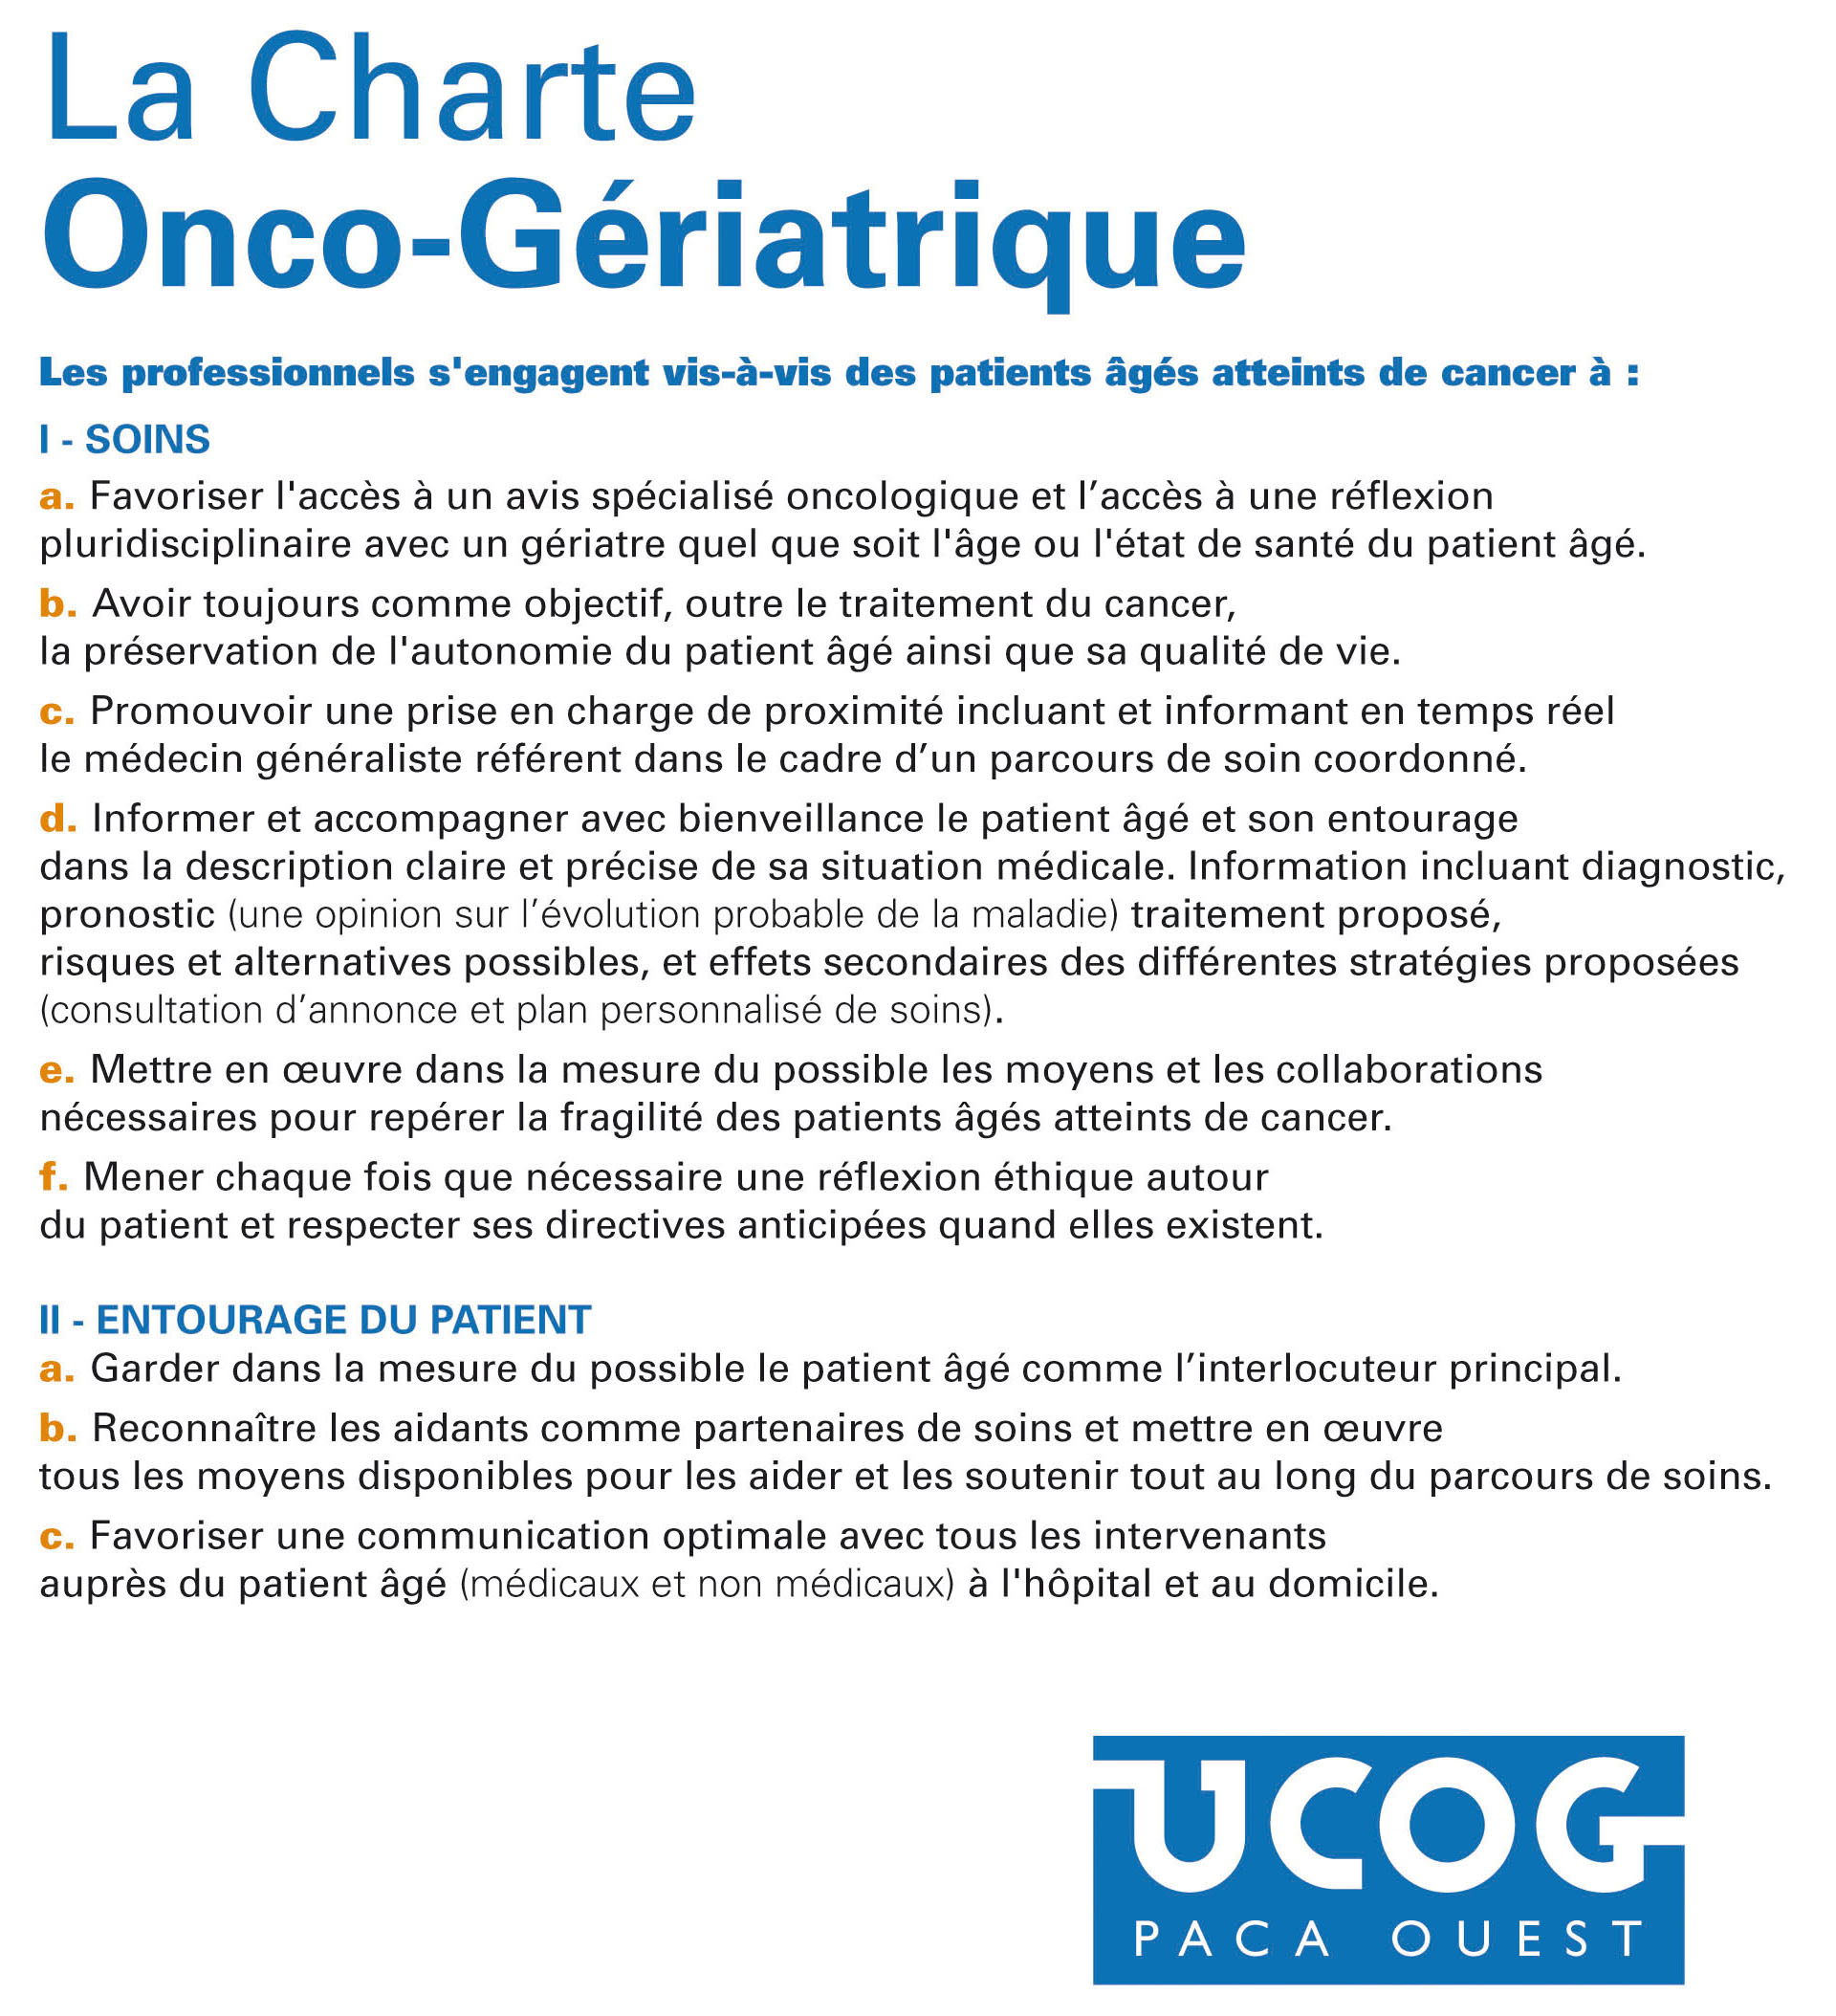 Charte oncogériatrique de l'UCOG Paca Ouest